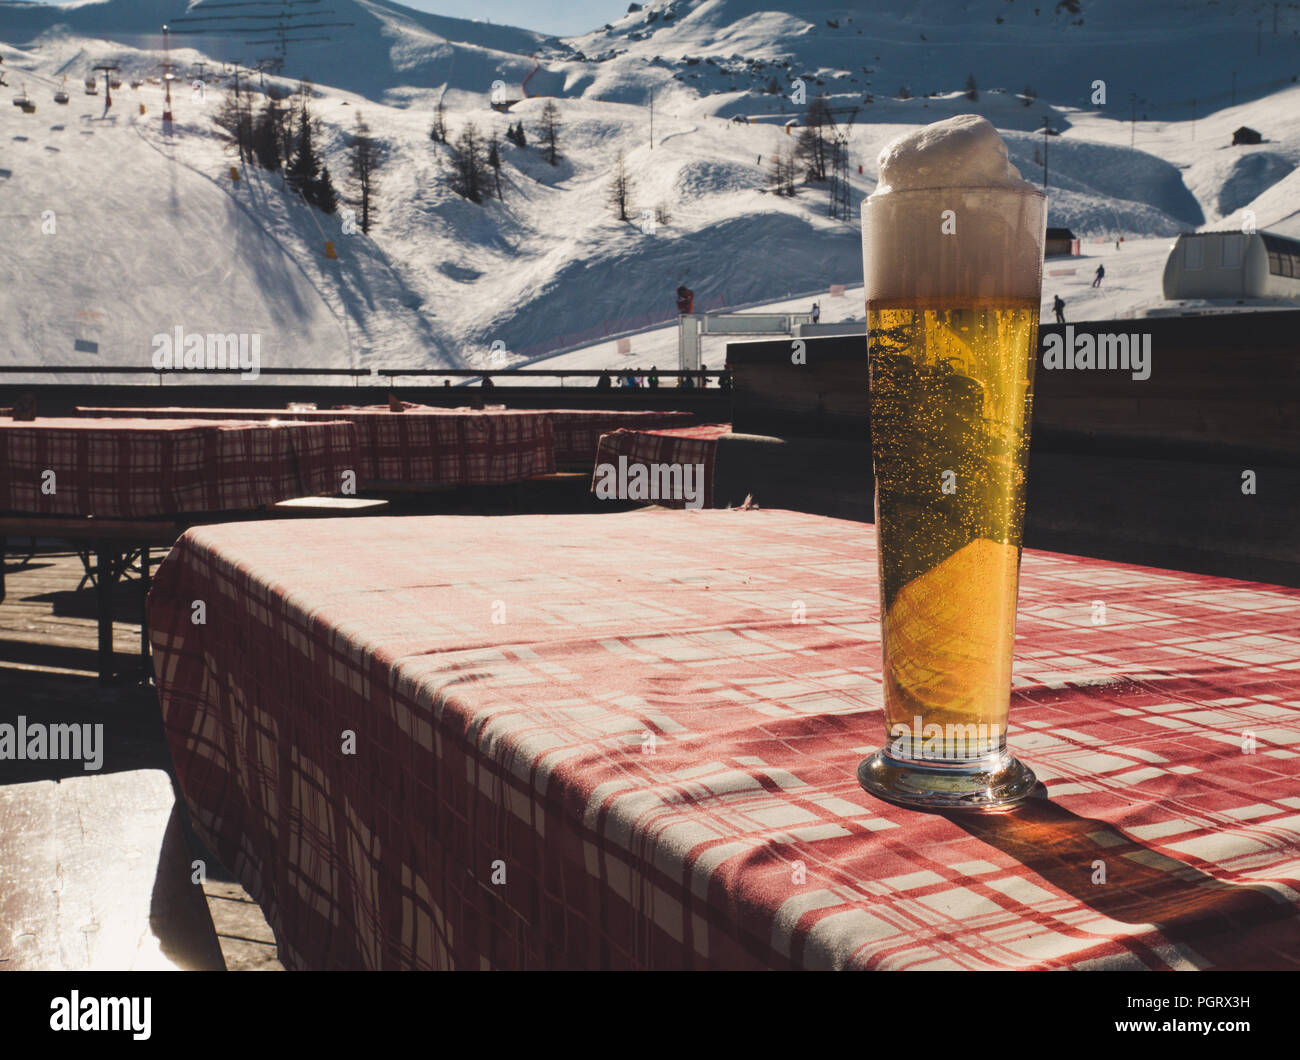 Großes Bier auf den Tisch, ein rot-weißes Karomuster Tuch. Winterlandschaft im Hintergrund mit Skipiste. Vintage Style. Stockfoto